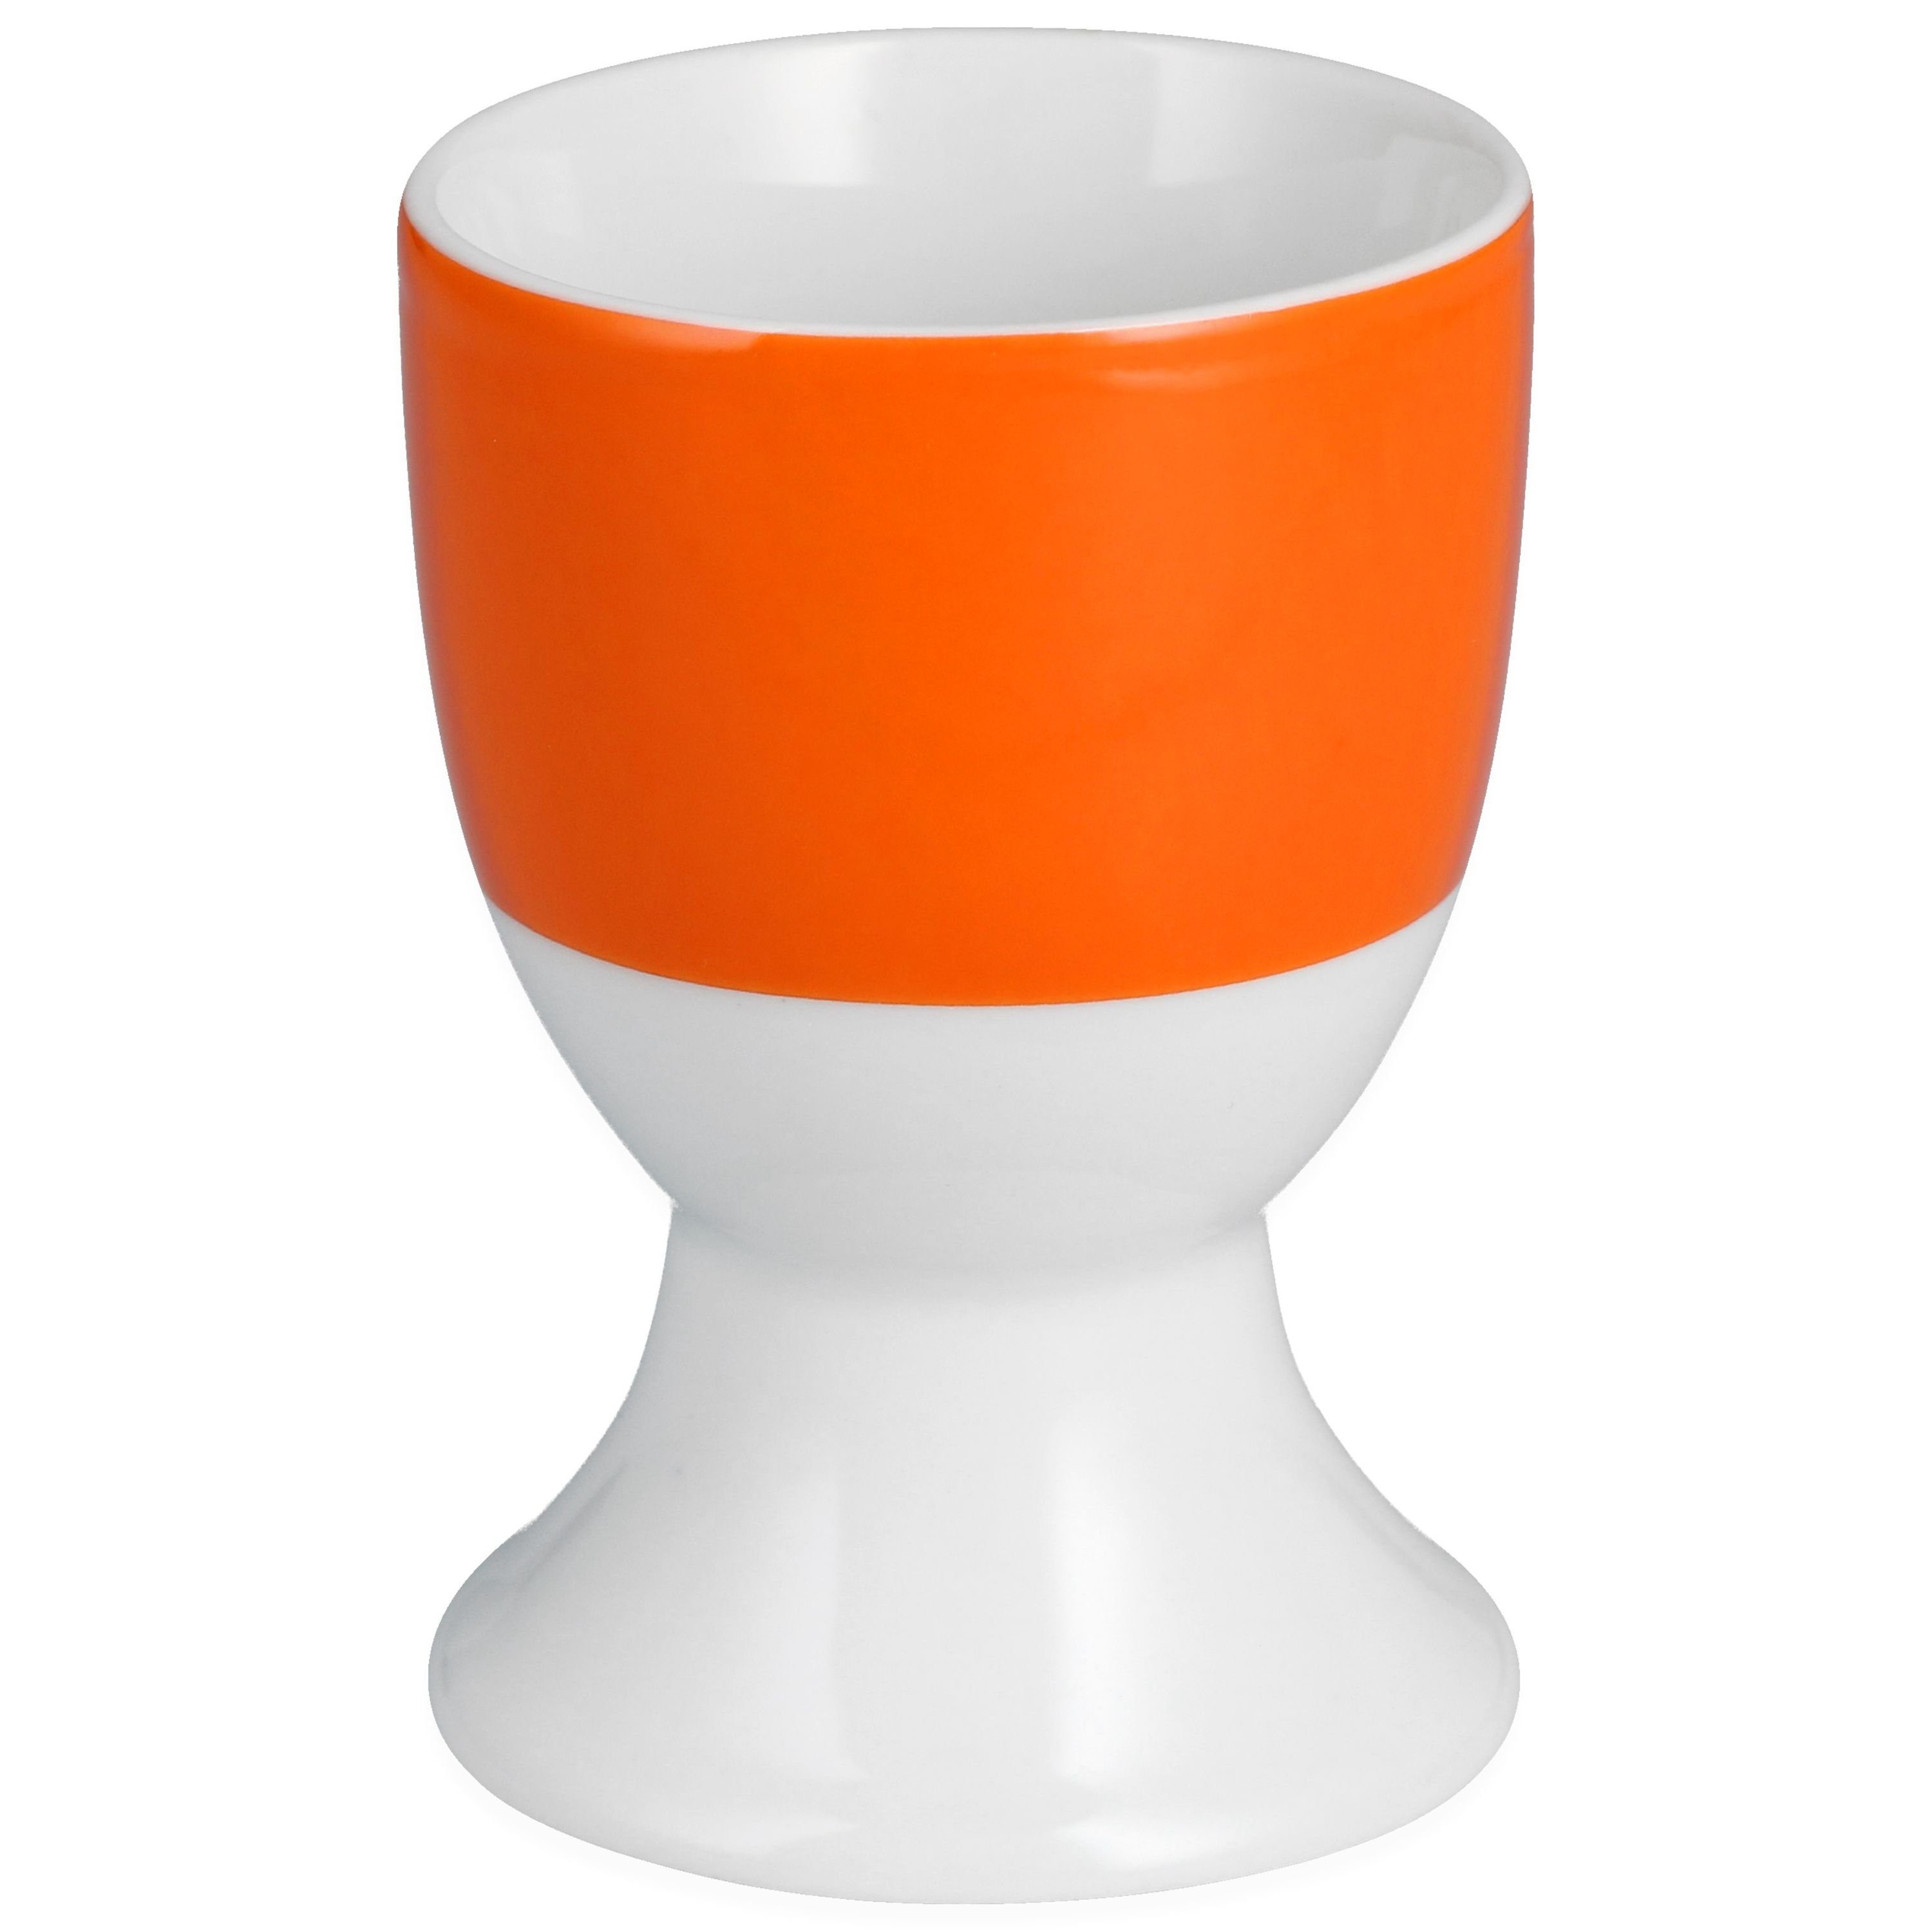 Porzellan 6er Serie - Van Vario orange Eierbecher Eierbecher van wählbar Well Set Farbe Well